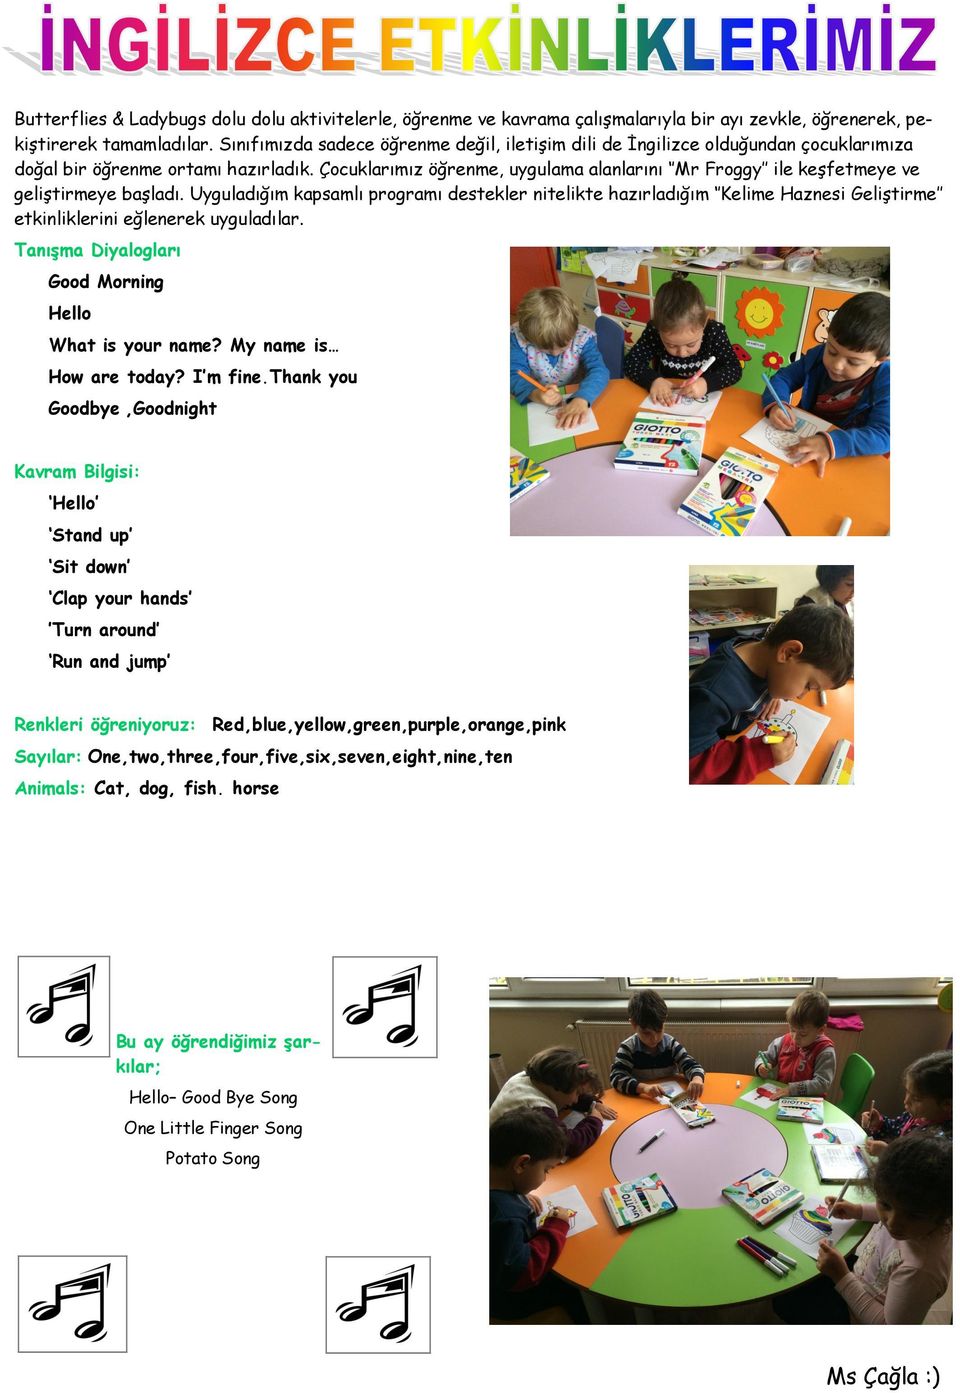 Çocuklarımız öğrenme, uygulama alanlarını Mr Froggy ile keşfetmeye ve geliştirmeye başladı.